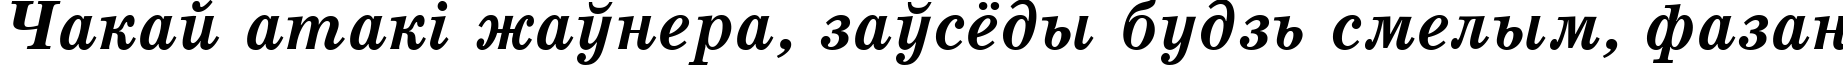 Пример написания шрифтом School Bold Italic:001.001 текста на белорусском